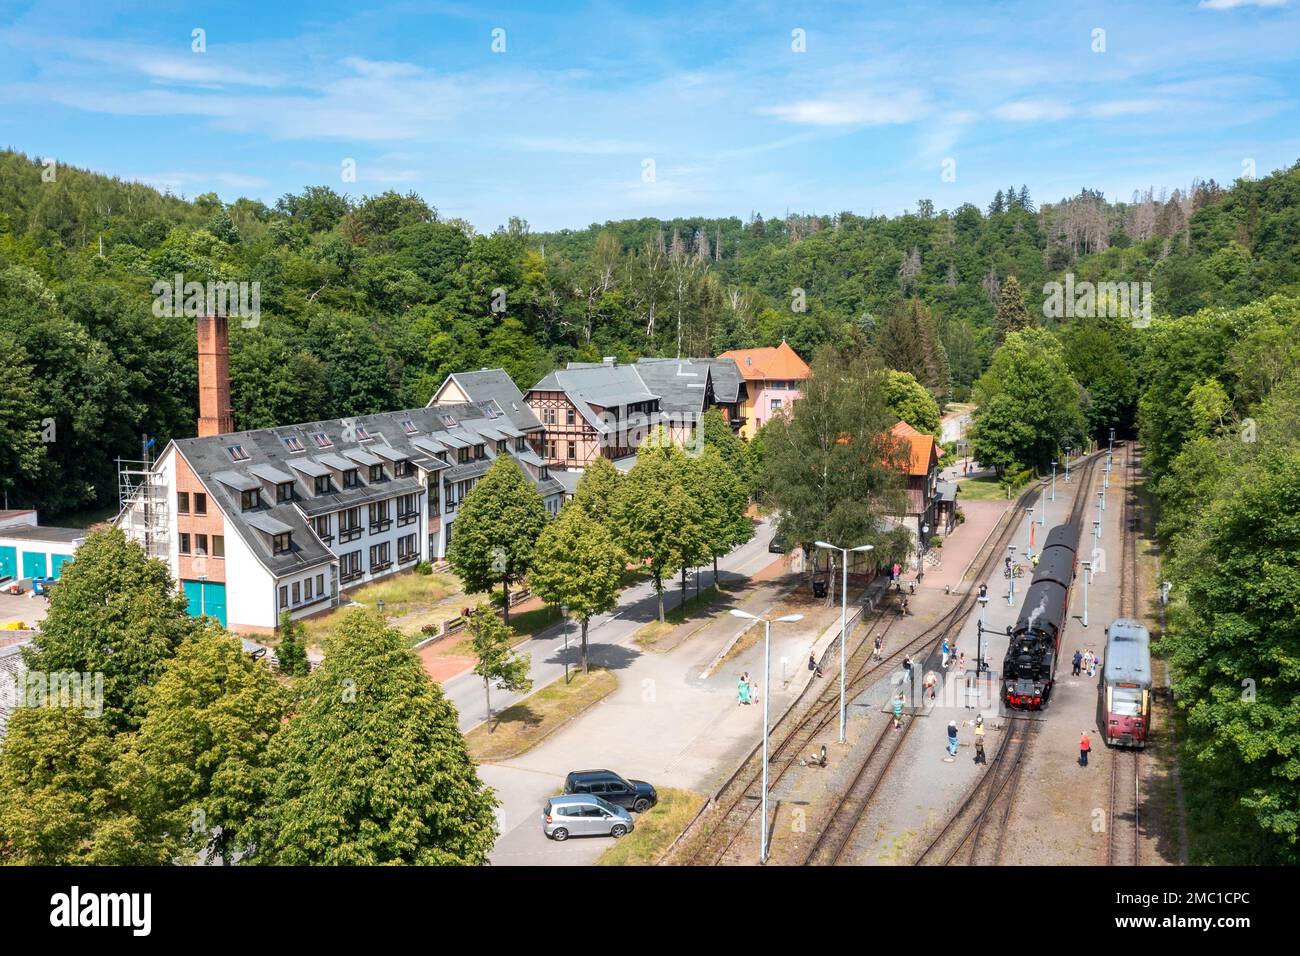 Gare d'Alexisbad dans la vallée de Selke avec chemin de fer Harz à voie étroite Banque D'Images